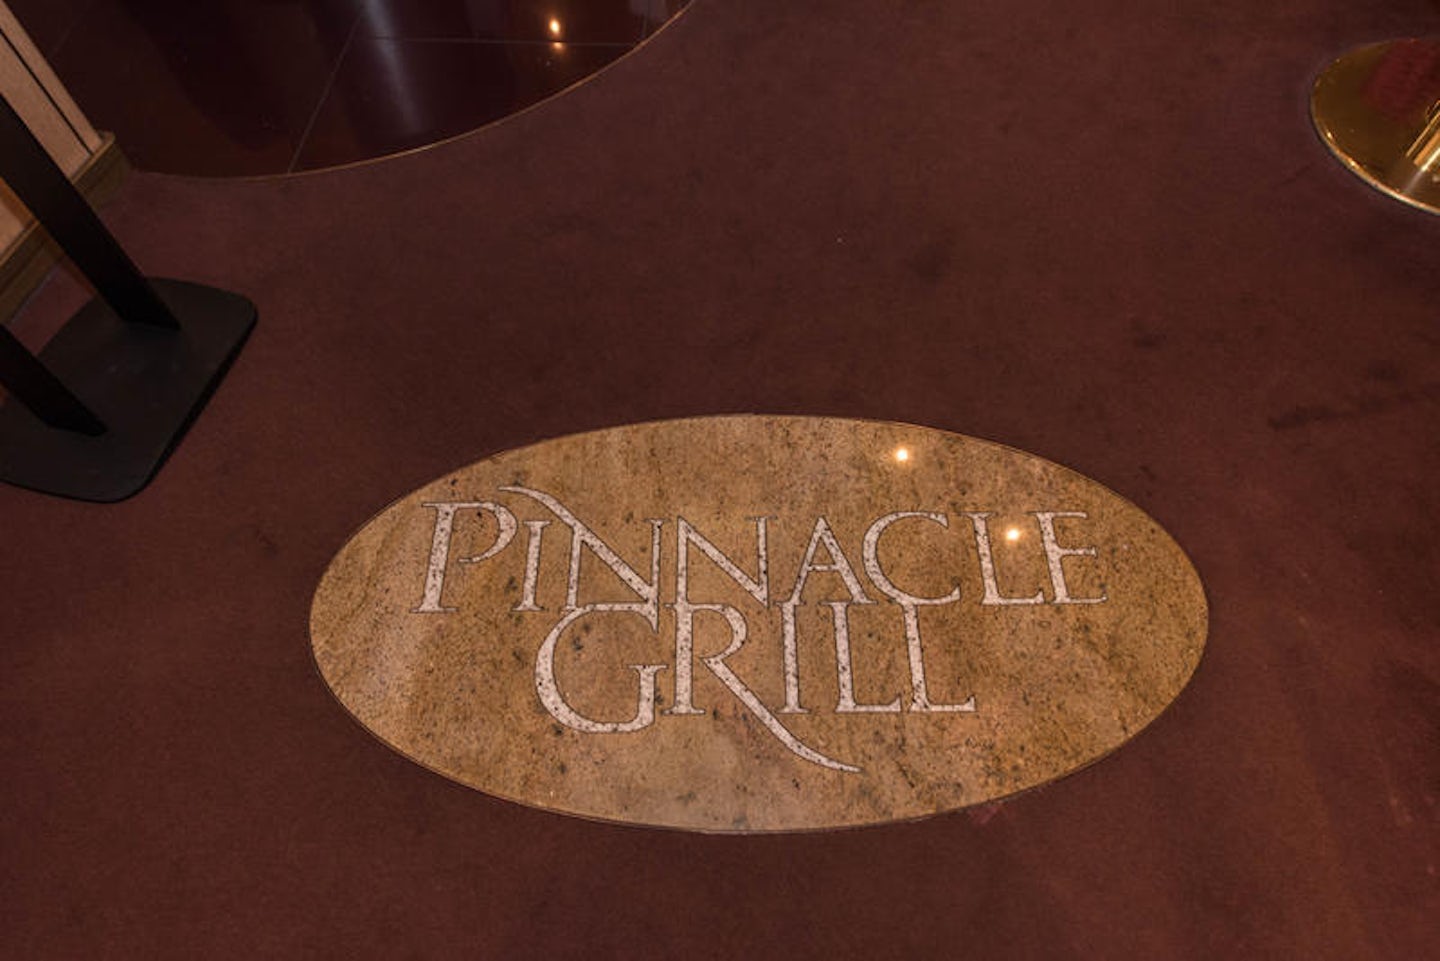 Pinnacle Grill on Noordam